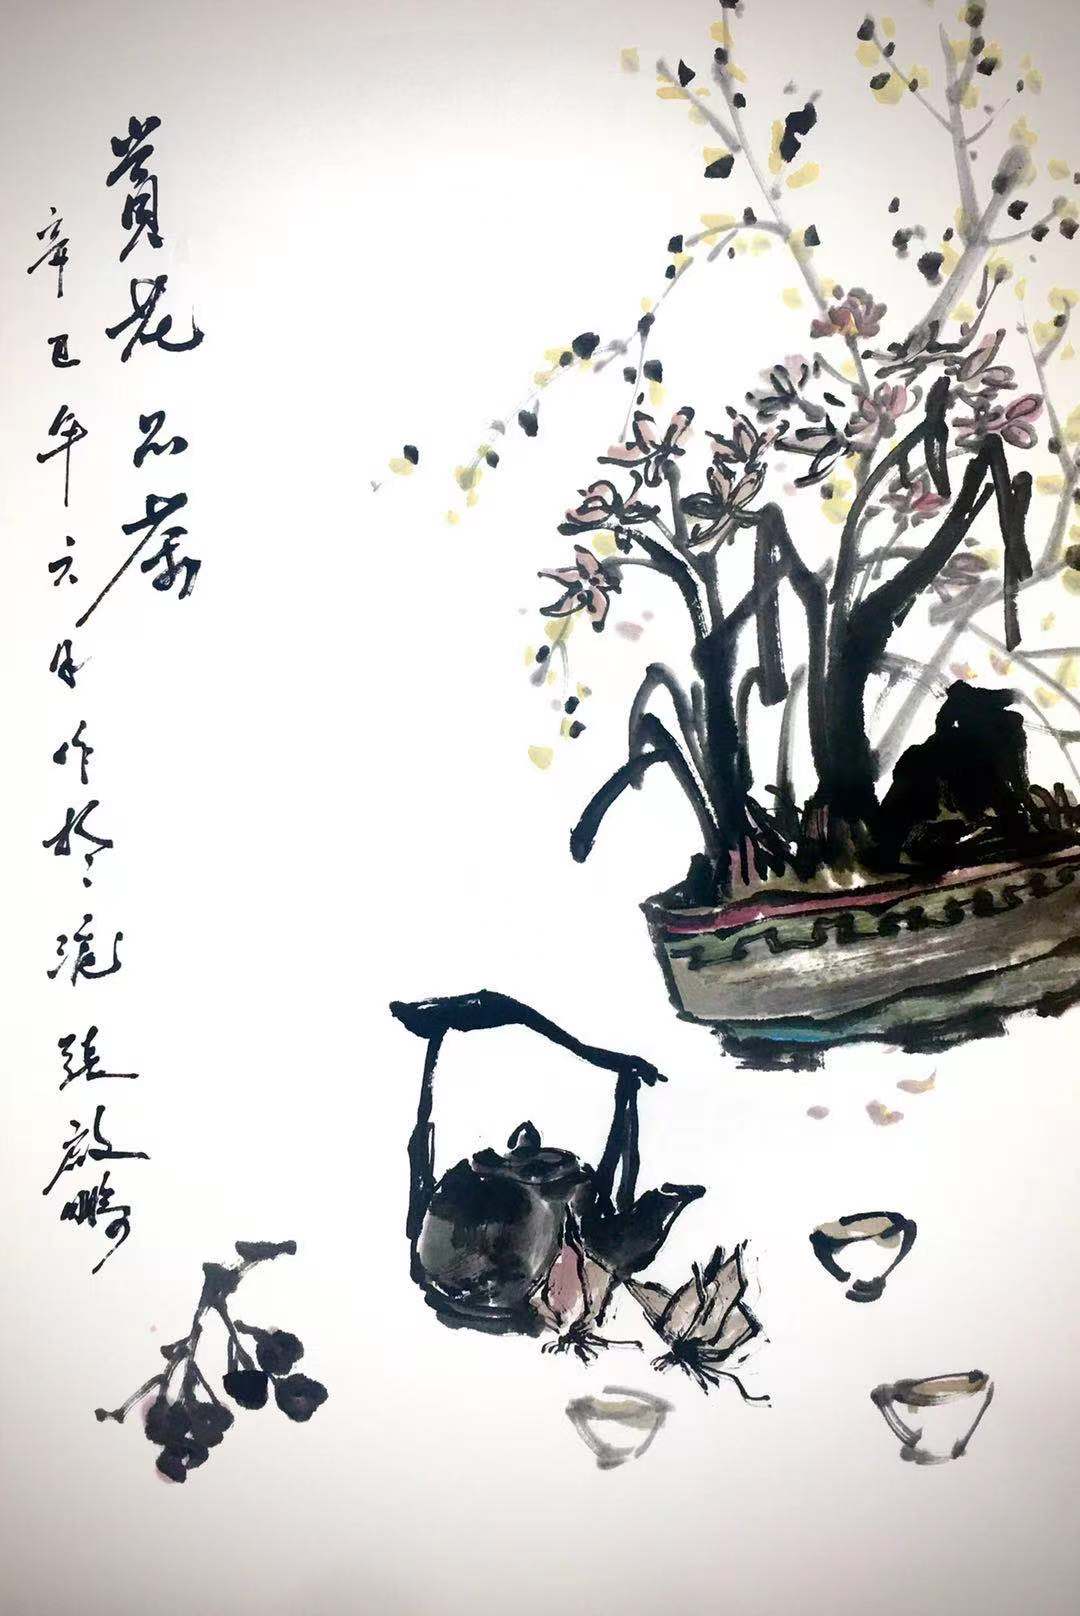 中国大众文化学会名人书画艺术发展委员会——张启鹏